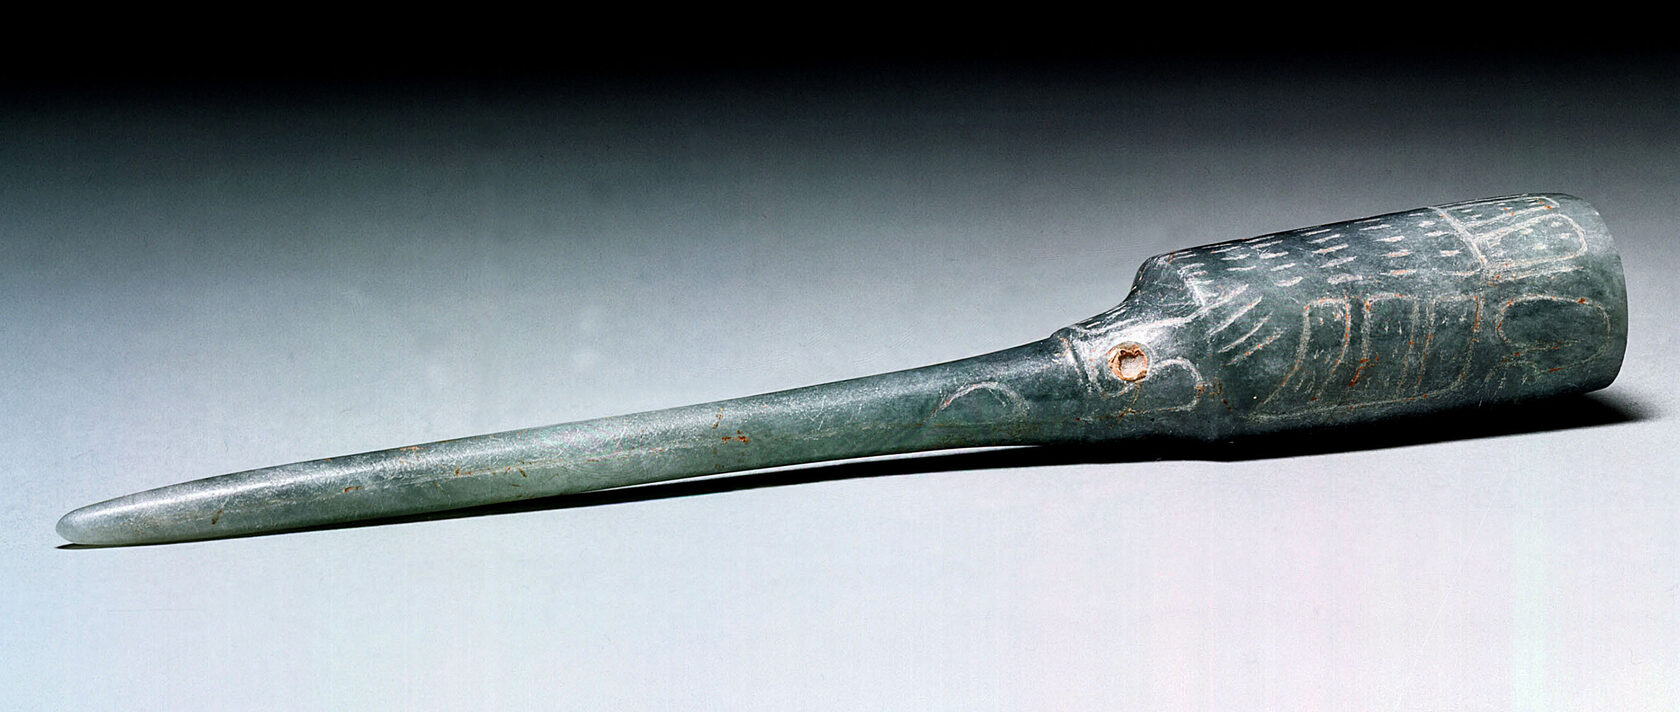 Инструмент для извлечения крови. Ольмеки, 900-300 гг. до н.э. Коллекция Dumbarton Oaks, Washington.